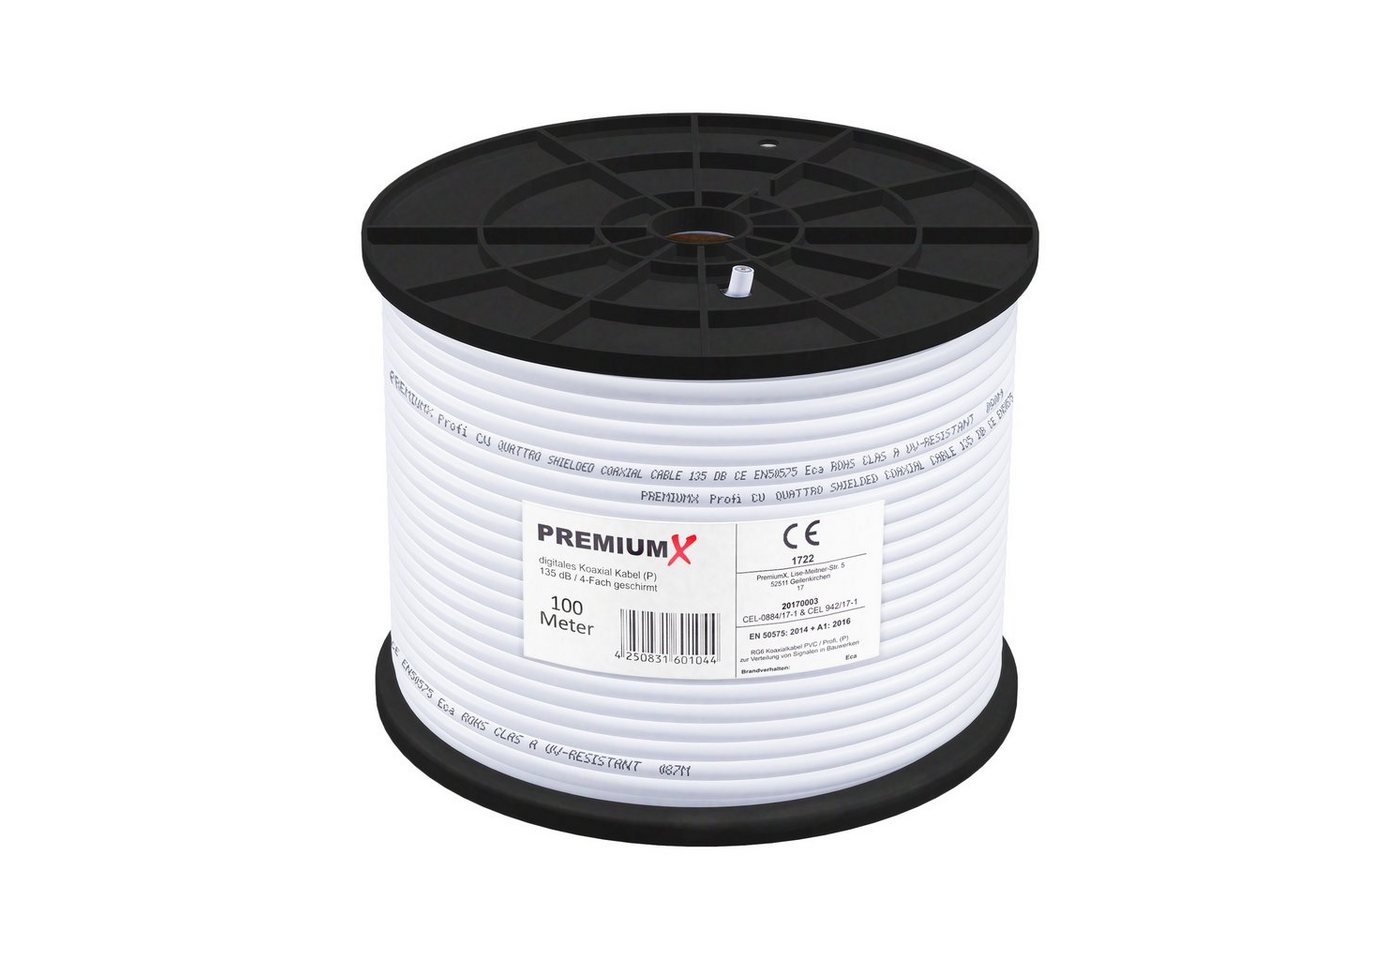 PremiumX 100m PROFI Koaxial Kabel 135dB 4-Fach REINES KUPFER Antennenkabel TV-Kabel von PremiumX